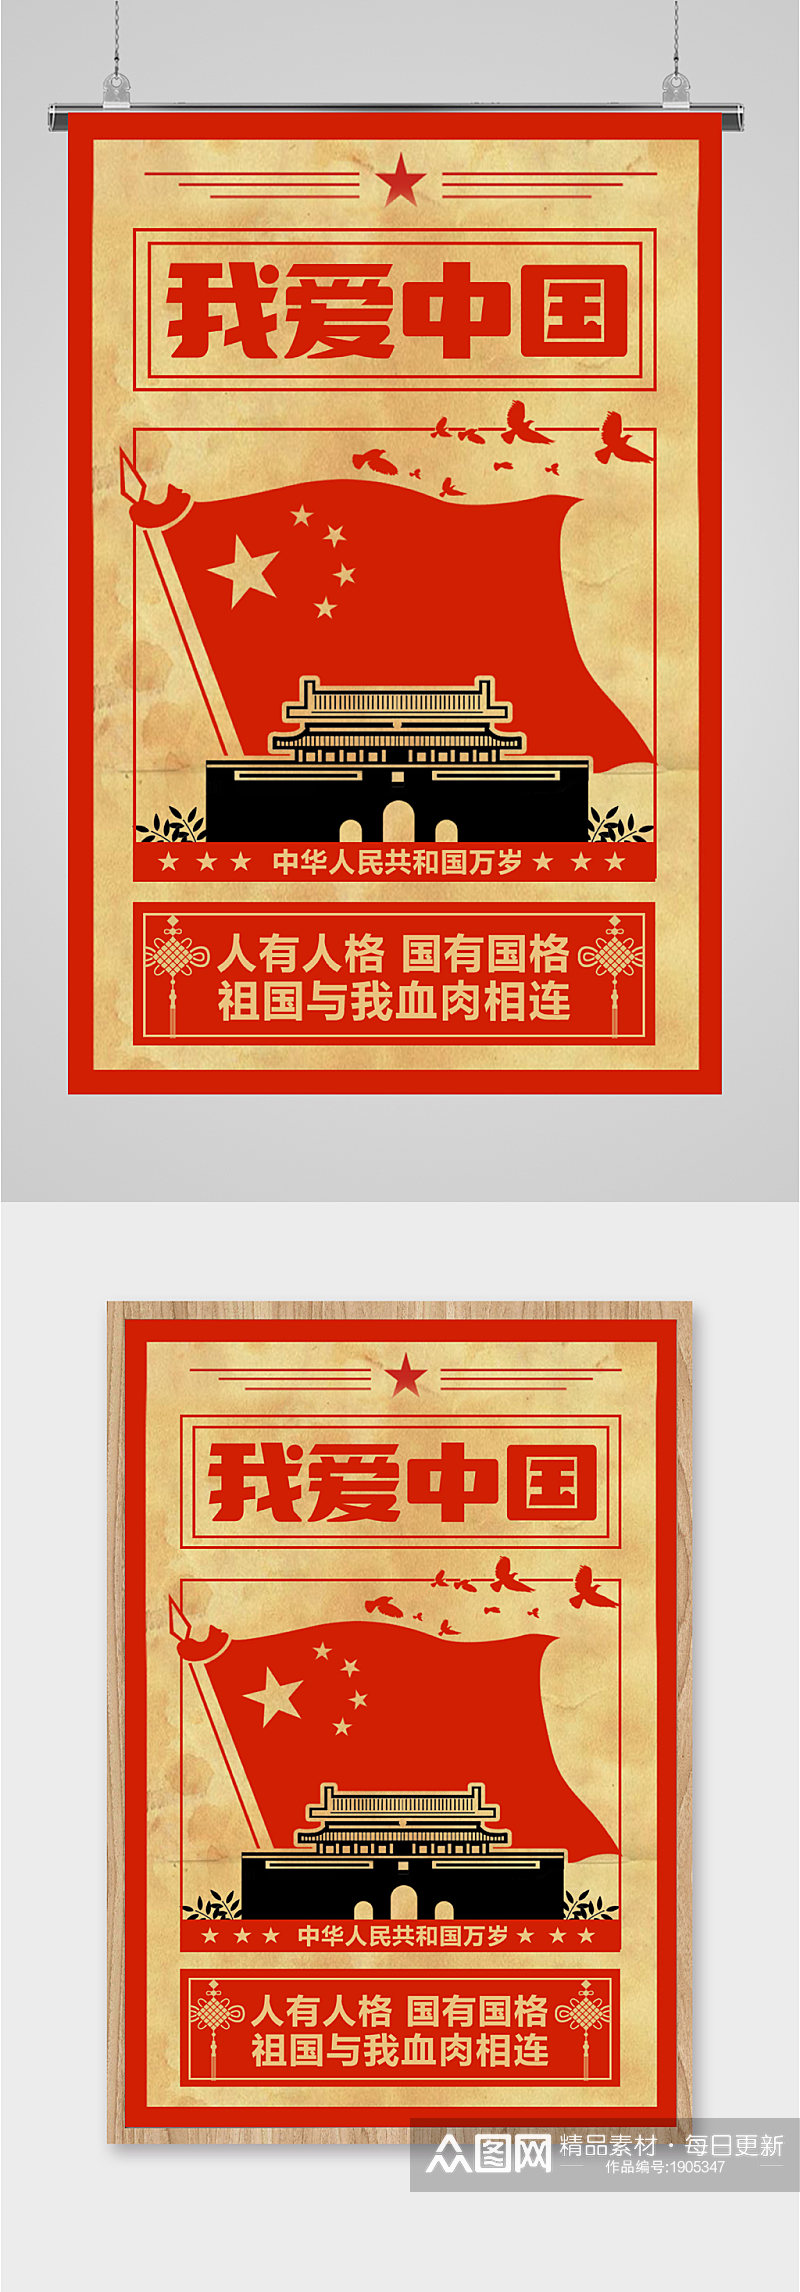 我爱中国中华民族万岁海报素材